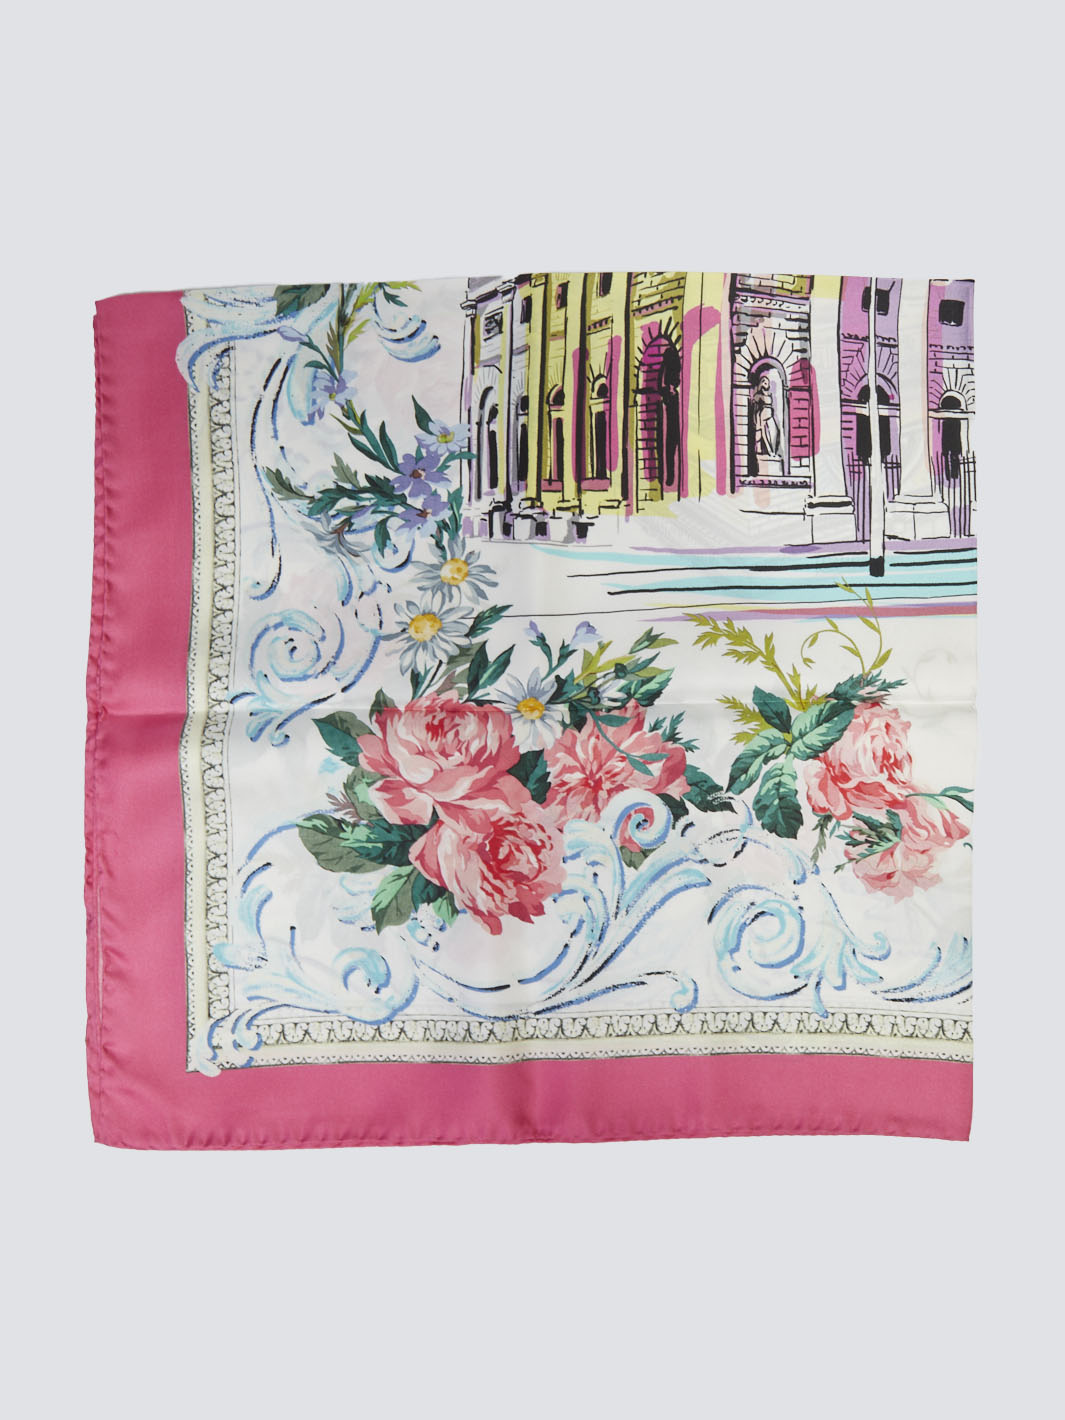 2010 silk carré Dolce&Gabbana scarf